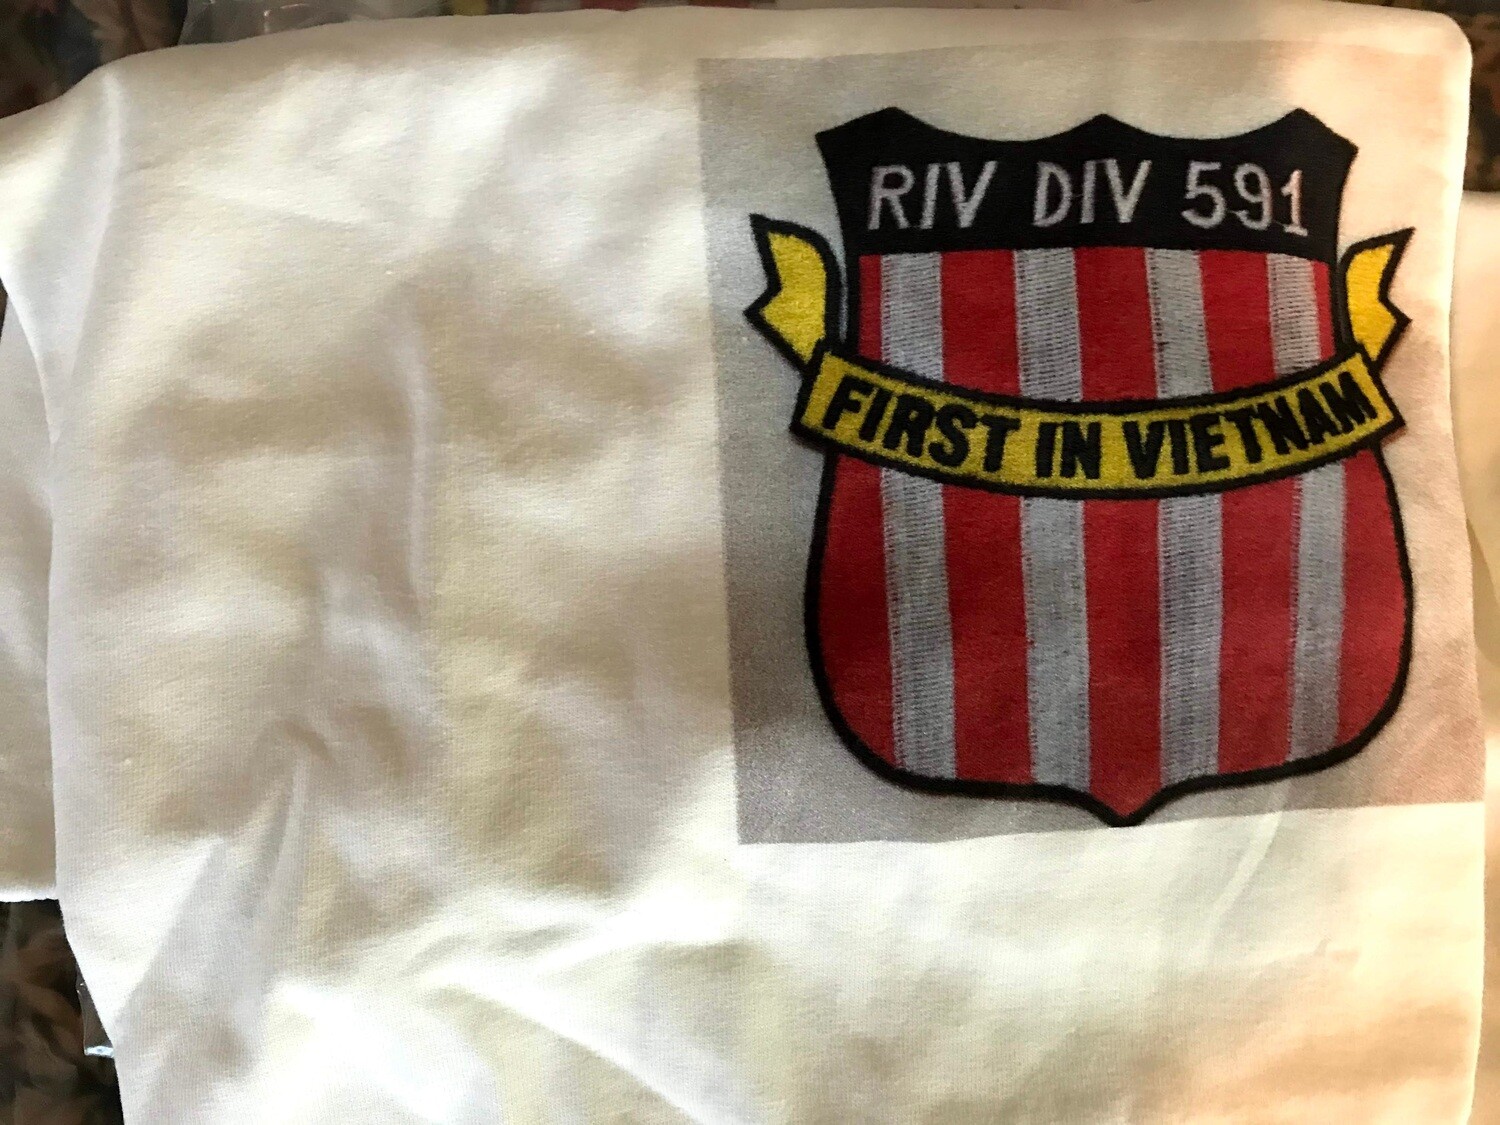 Café Press UNIT t-shirts, Cafe Press UNIT T-shirts: RIV DIV 591 1/2 Front - 2XL